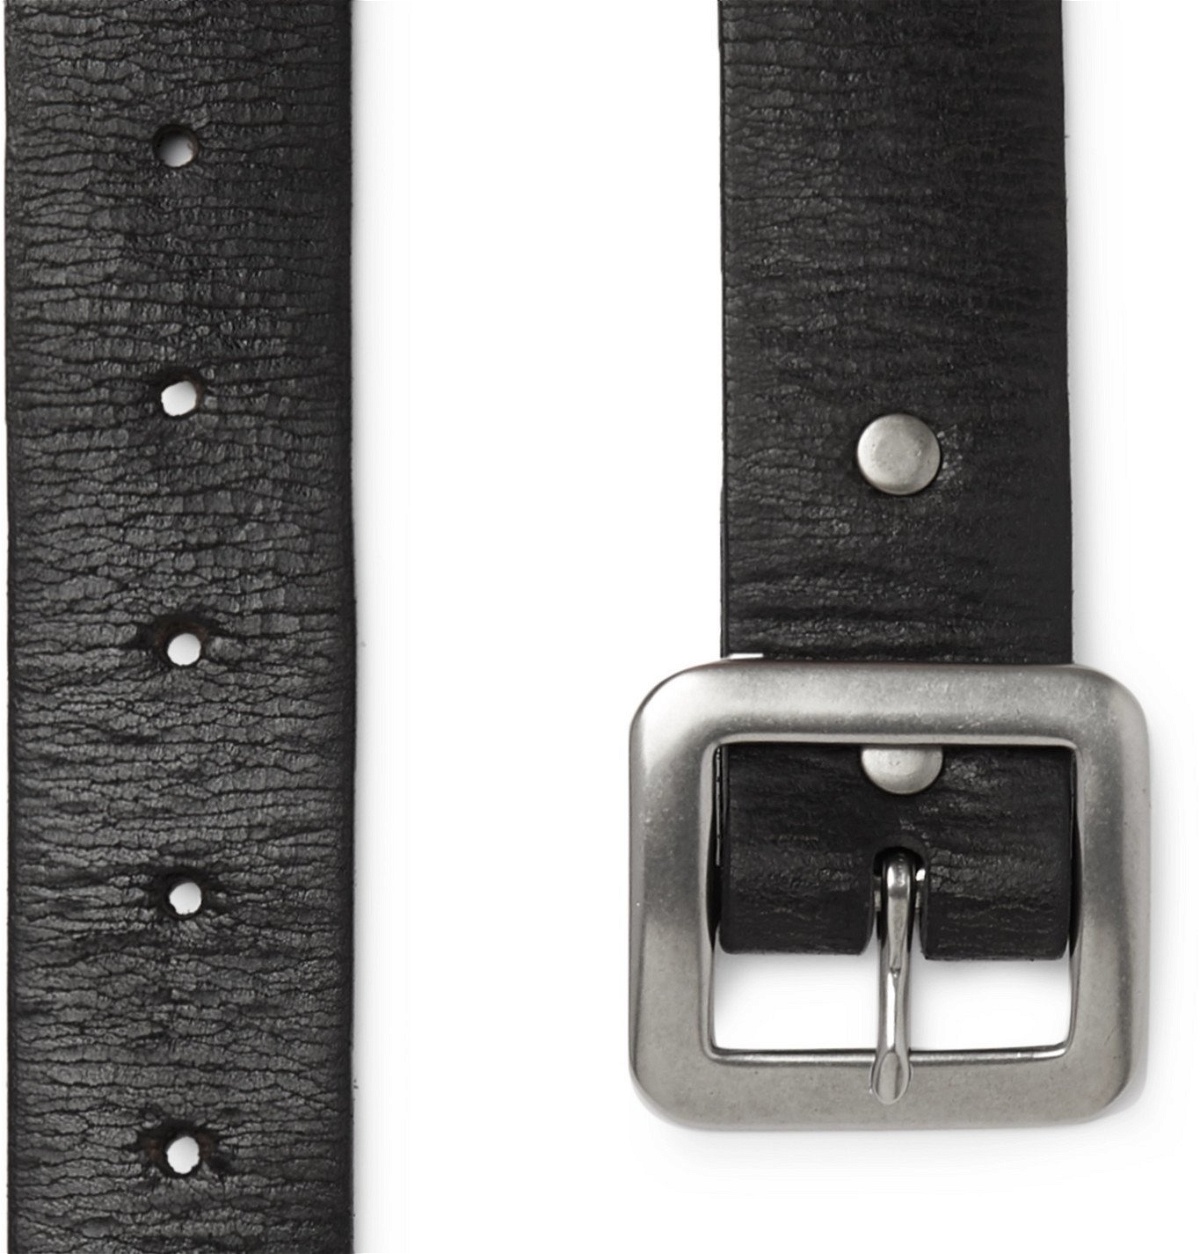 小物 ベルト RRL - 3.5cm Burlington Distressed Leather Belt - Black RRL